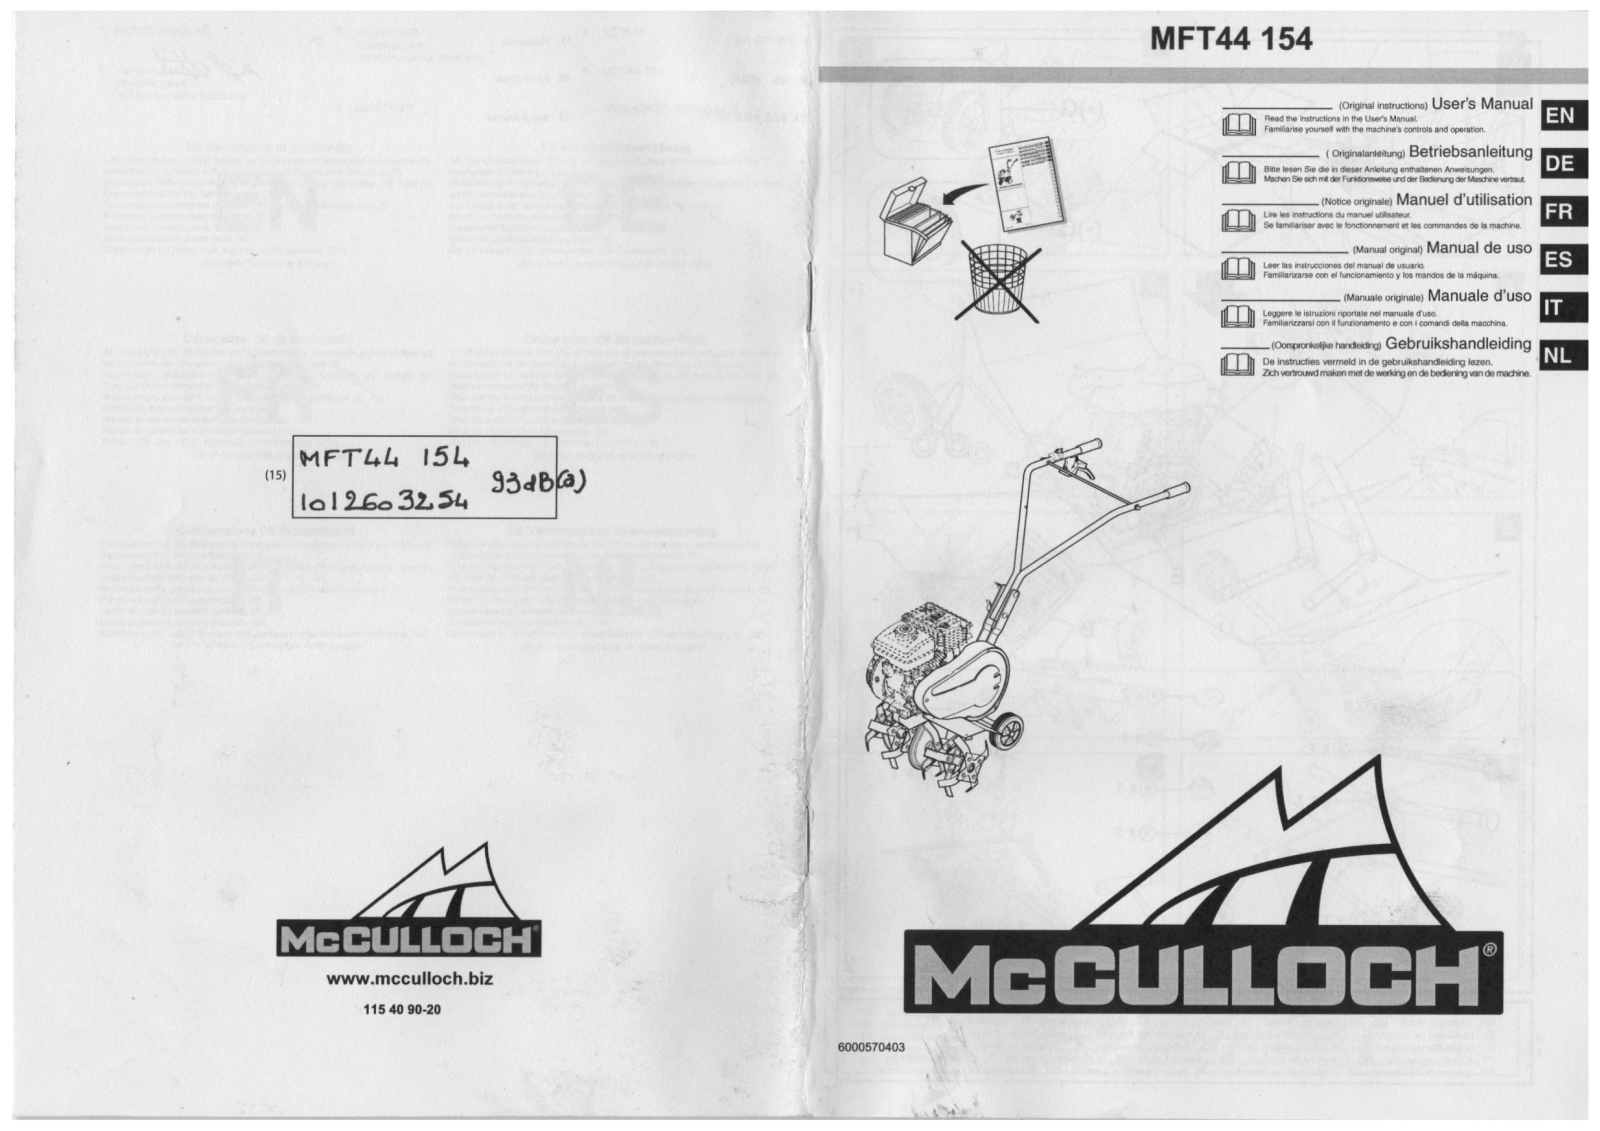 MCCULLOCH MFT44 154 User Manual